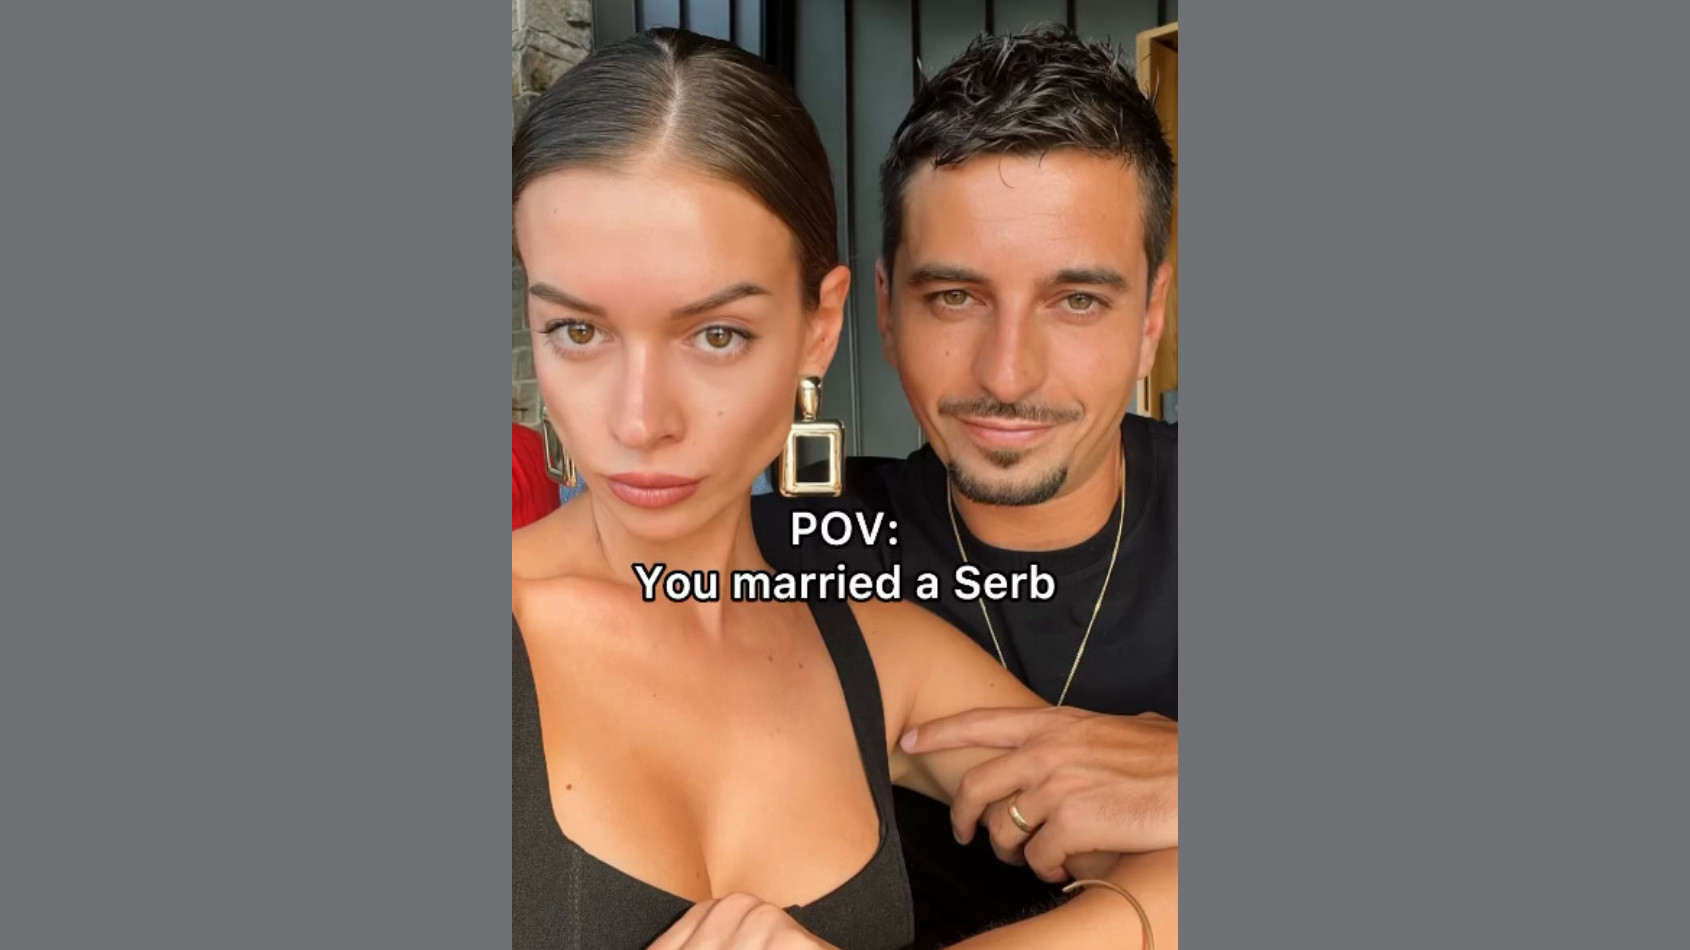 Moldavka udata za Srbina postala je hit na mrežama zbog ismevanja Slovenki: "Njegov novac je naš novac, a moj - samo moj"